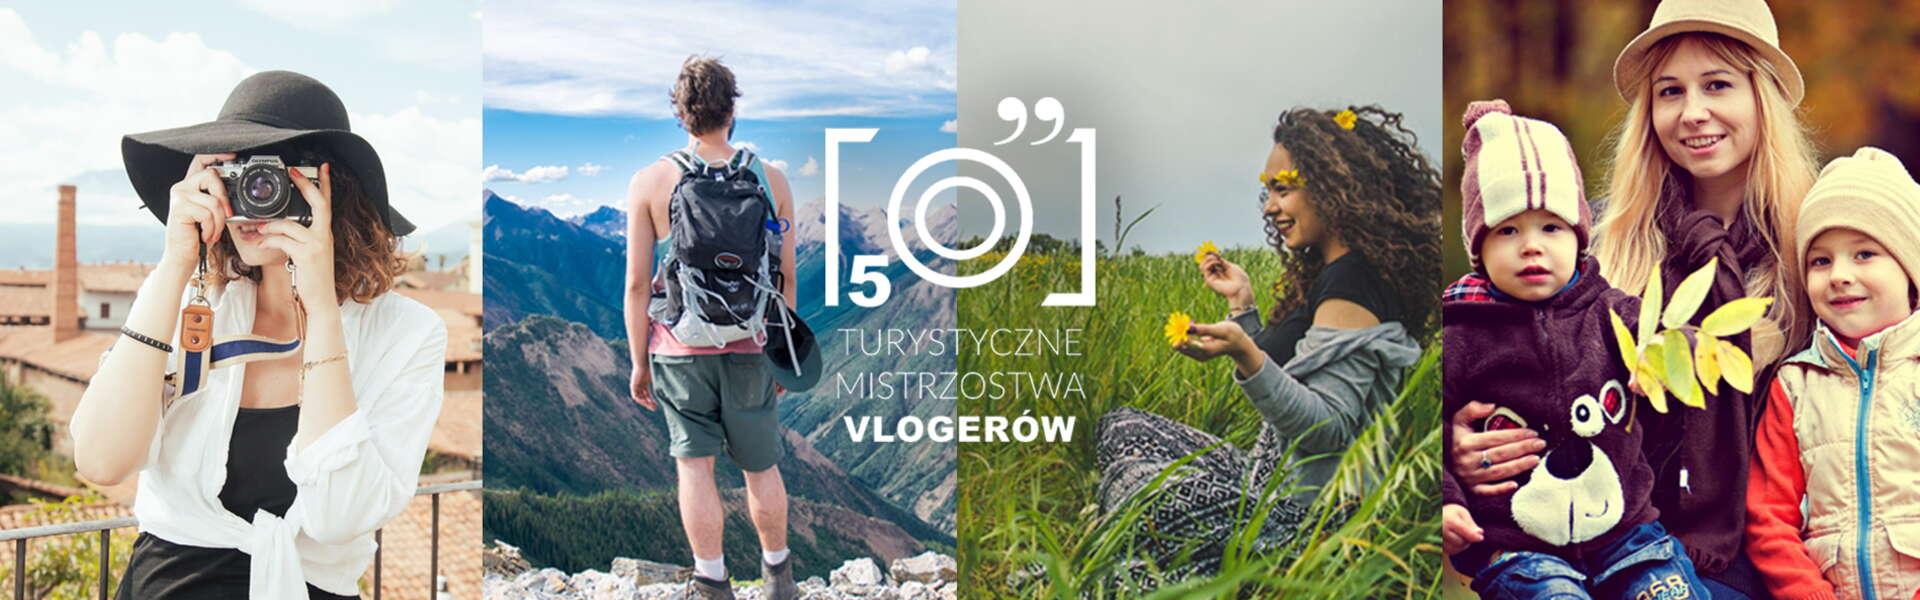 Obrazek: Zagłosuj na Małopolskę - V Turystyczne Mistrzostwa Vlogerów!